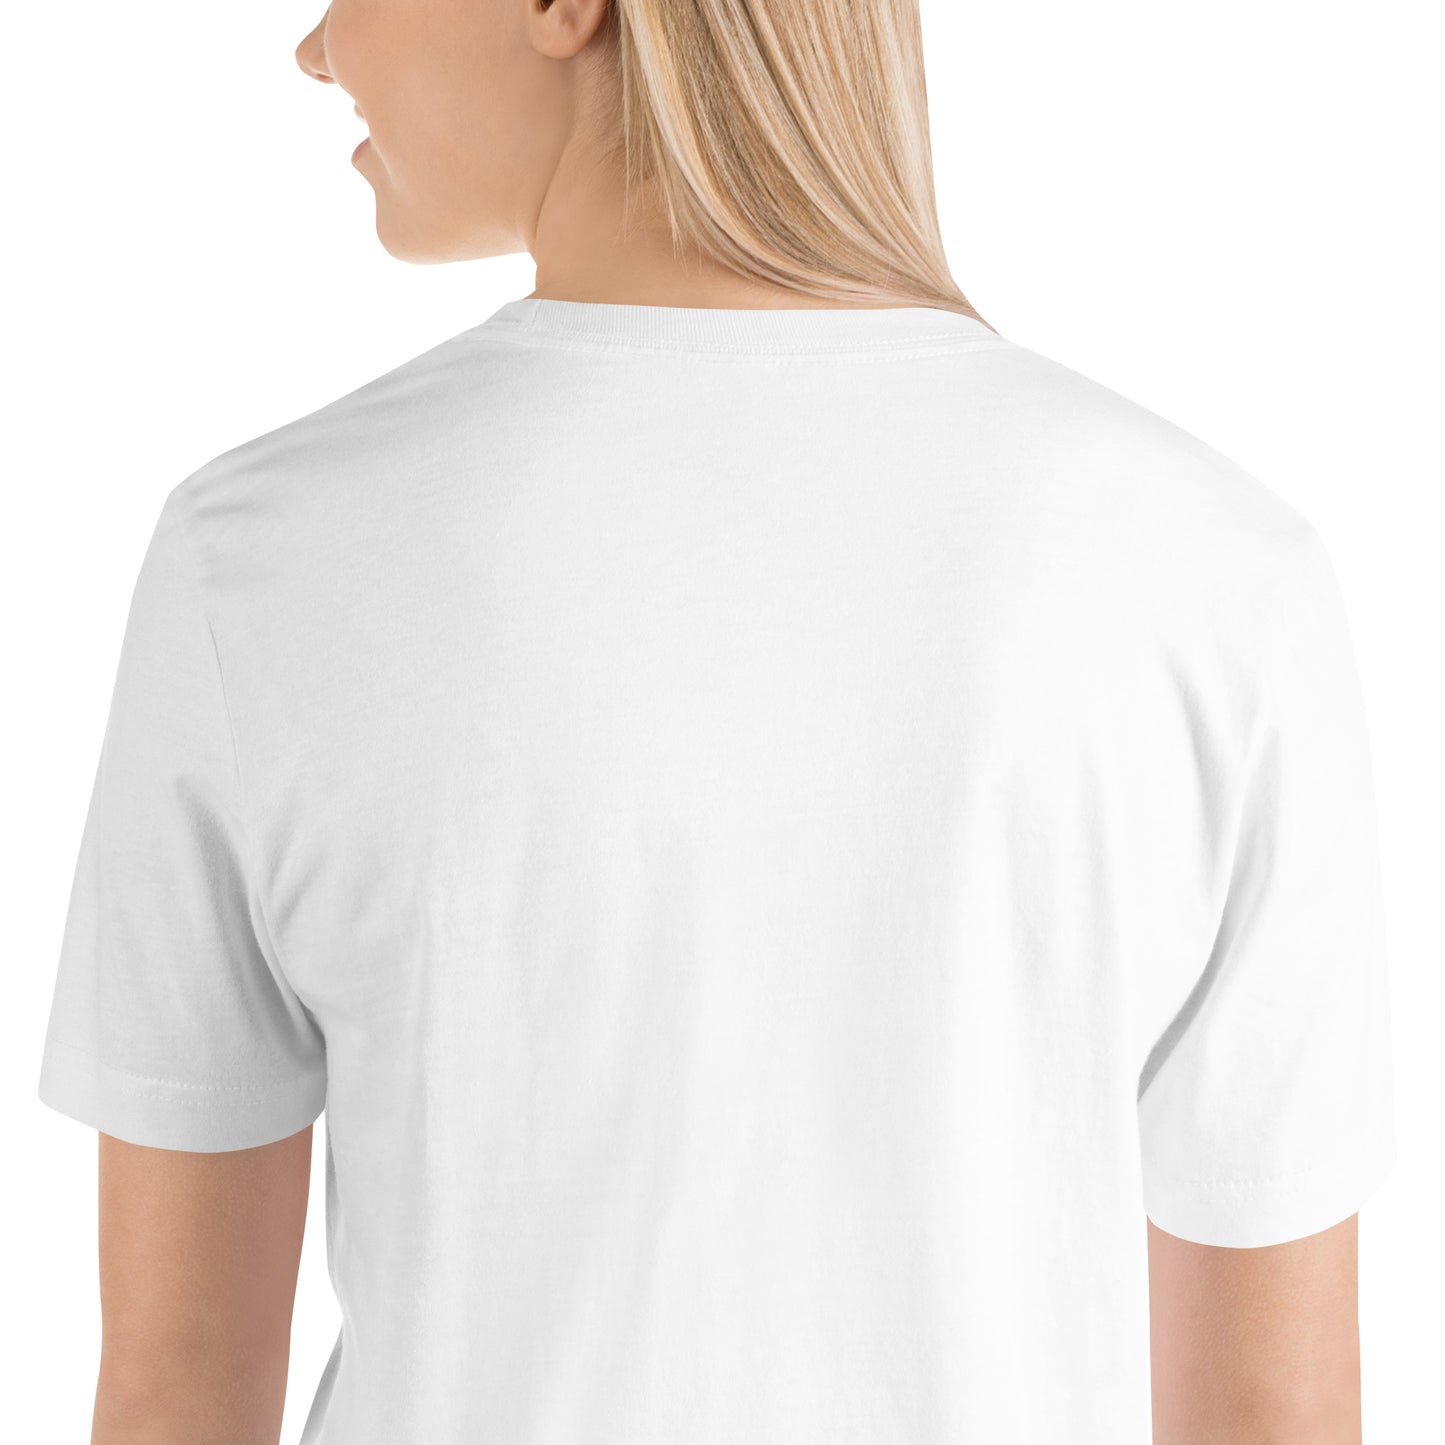 Corporate Kiss-Butt T-Shirt